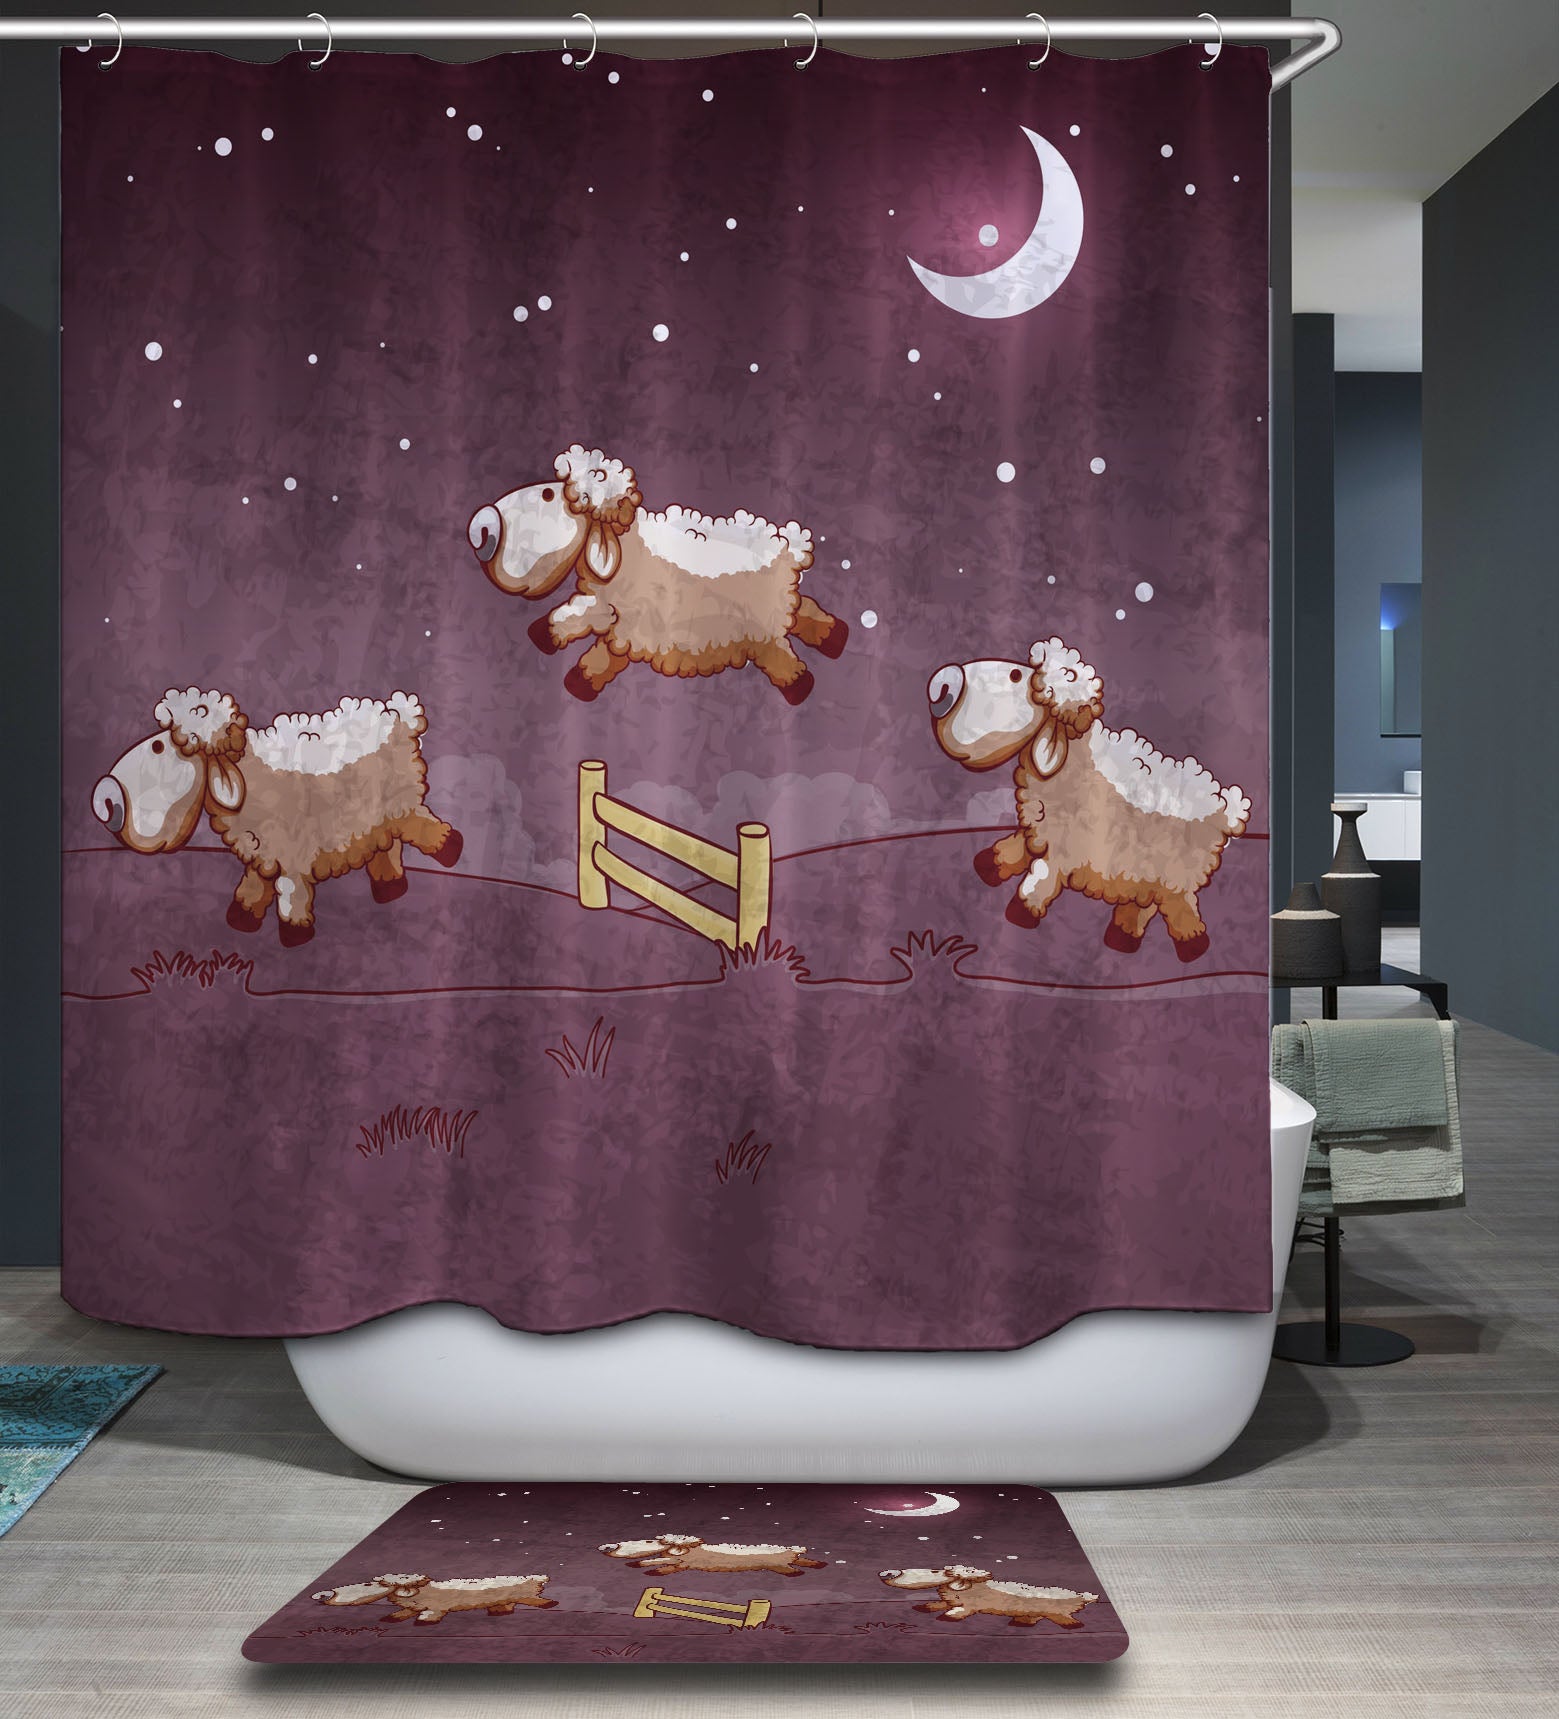 Cute Anime Shower Curtain Hotel Bathroom Theme Set for girs Boys Bedroom   Walmartcom